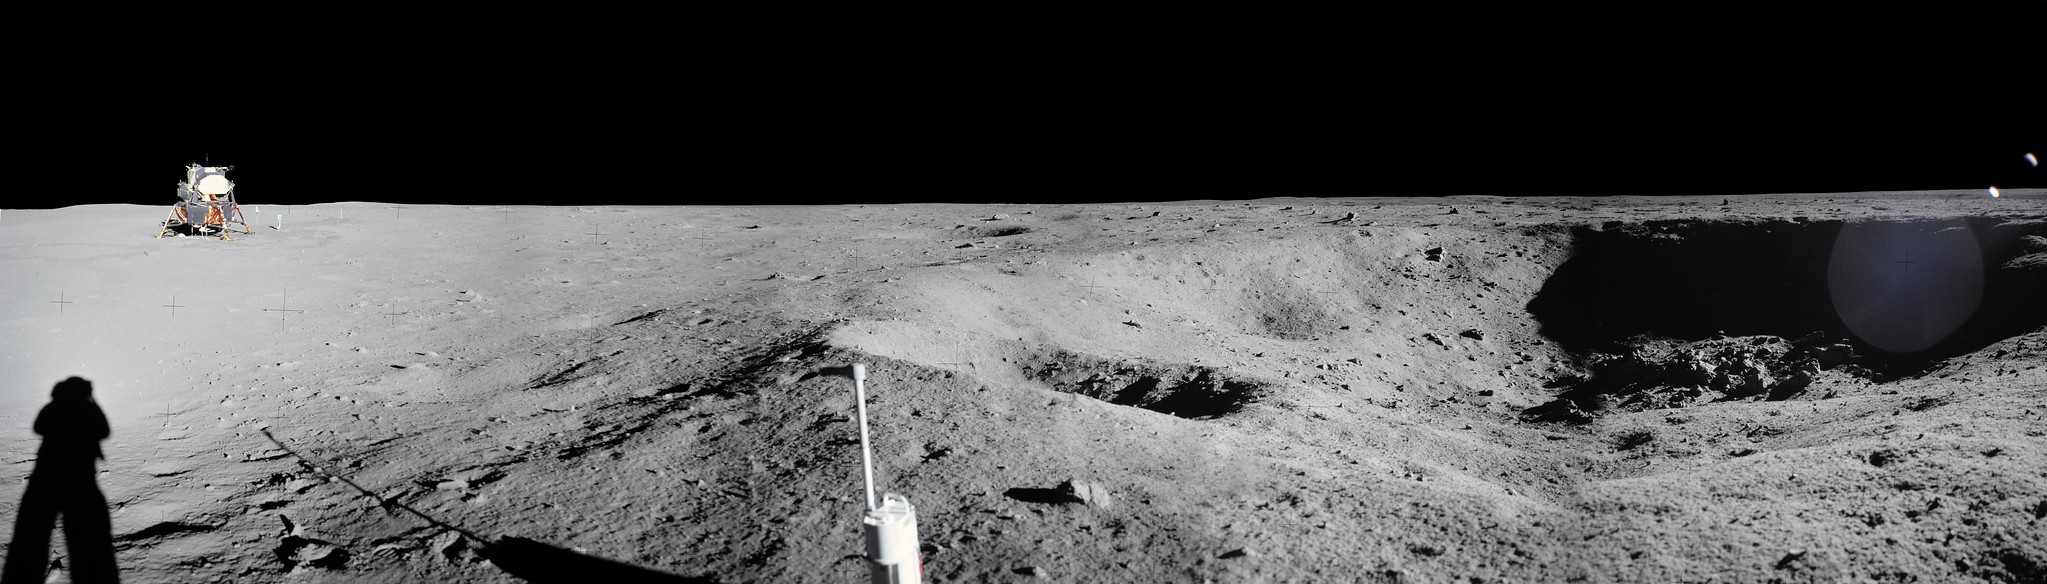 apollo 11 landing site | панорама места посадки Аполлон-11